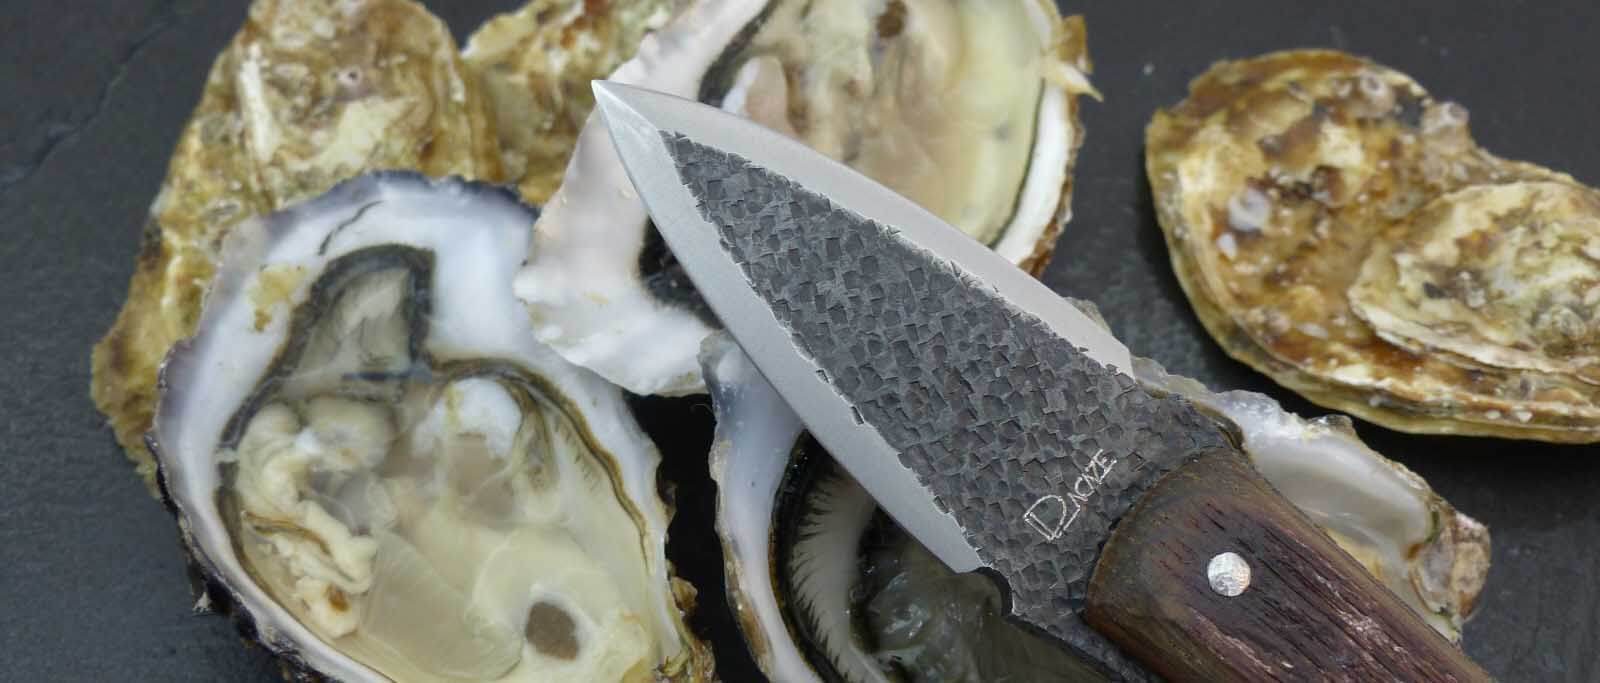 Le couteau pour ouvrir les huîtres facilement